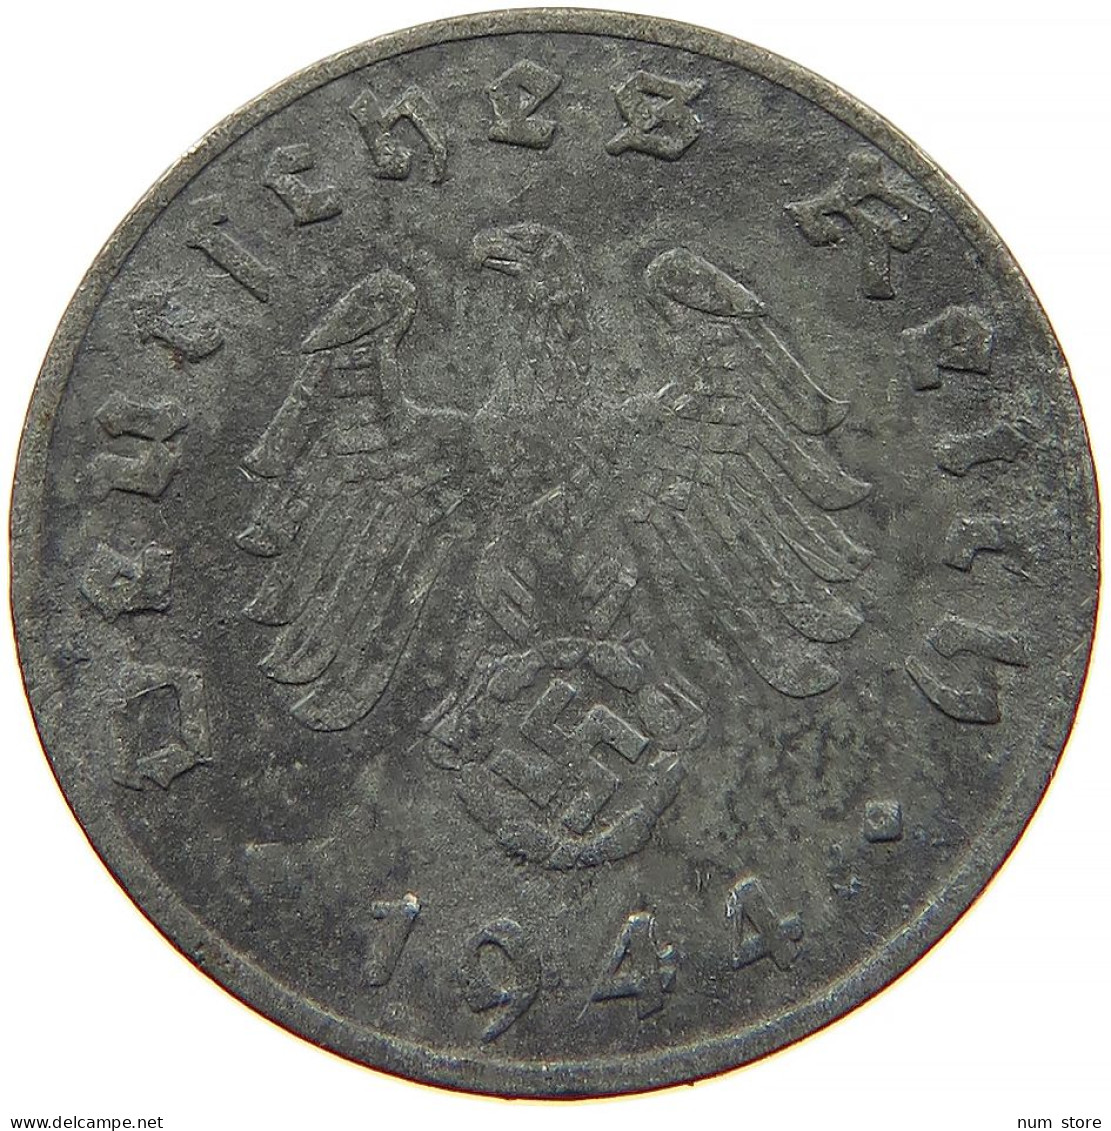 GERMANY 1 REICHSPFENNIG 1944 G #s091 1053 - 1 Reichspfennig